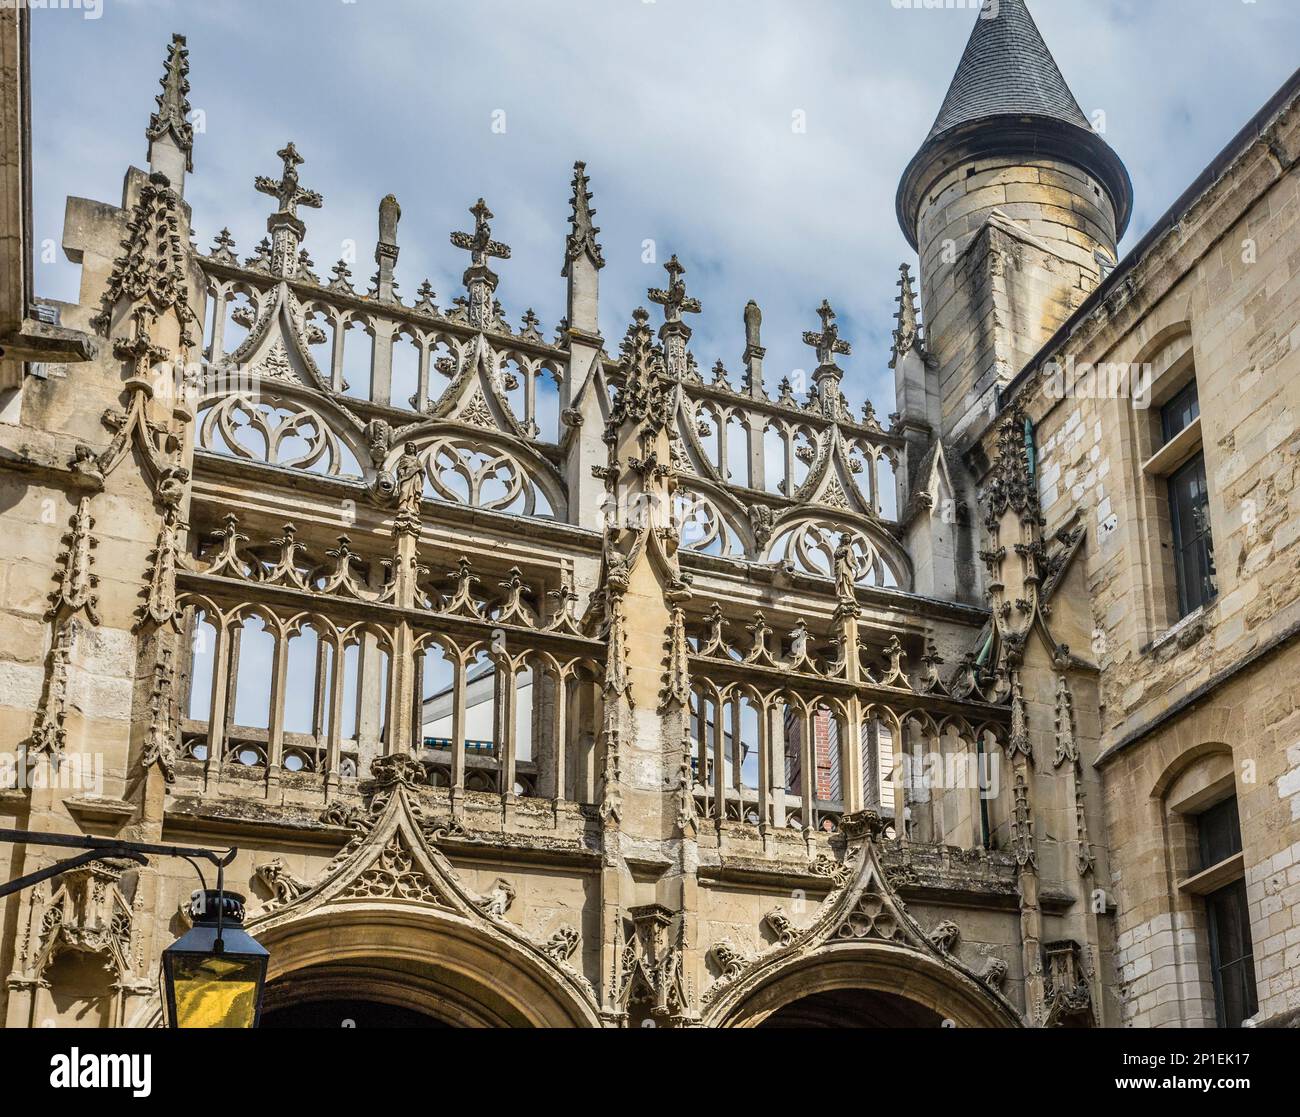 La tracerie gothique flamboyant au Portail des bibliothécaires de la Cathédrale de Rouen, Normandie, France Banque D'Images